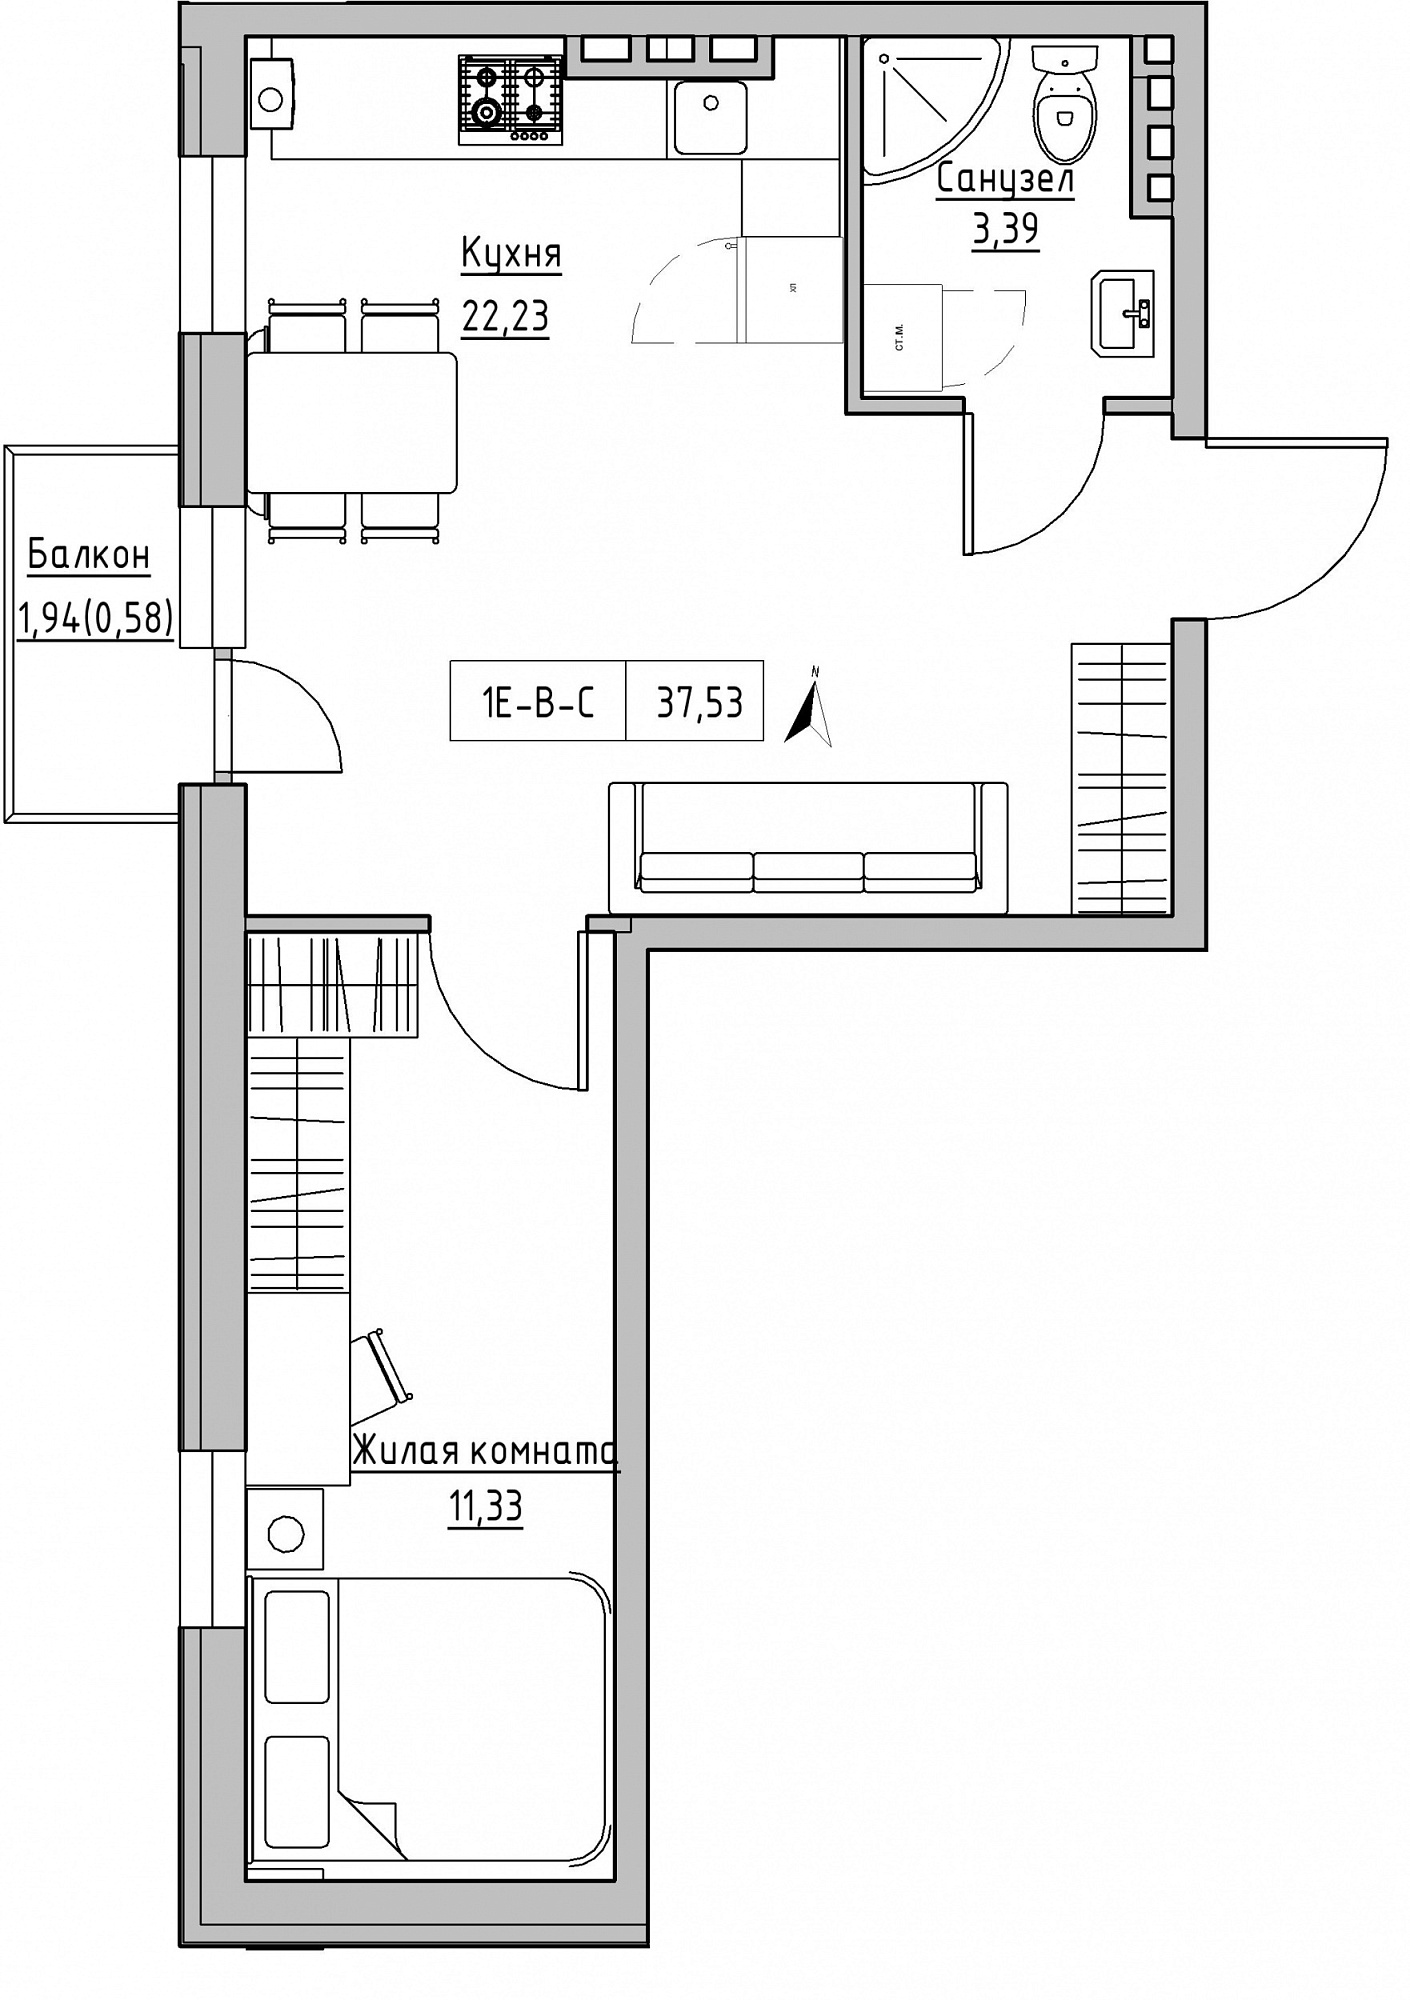 Планування 1-к квартира площею 37.53м2, KS-024-03/0010.